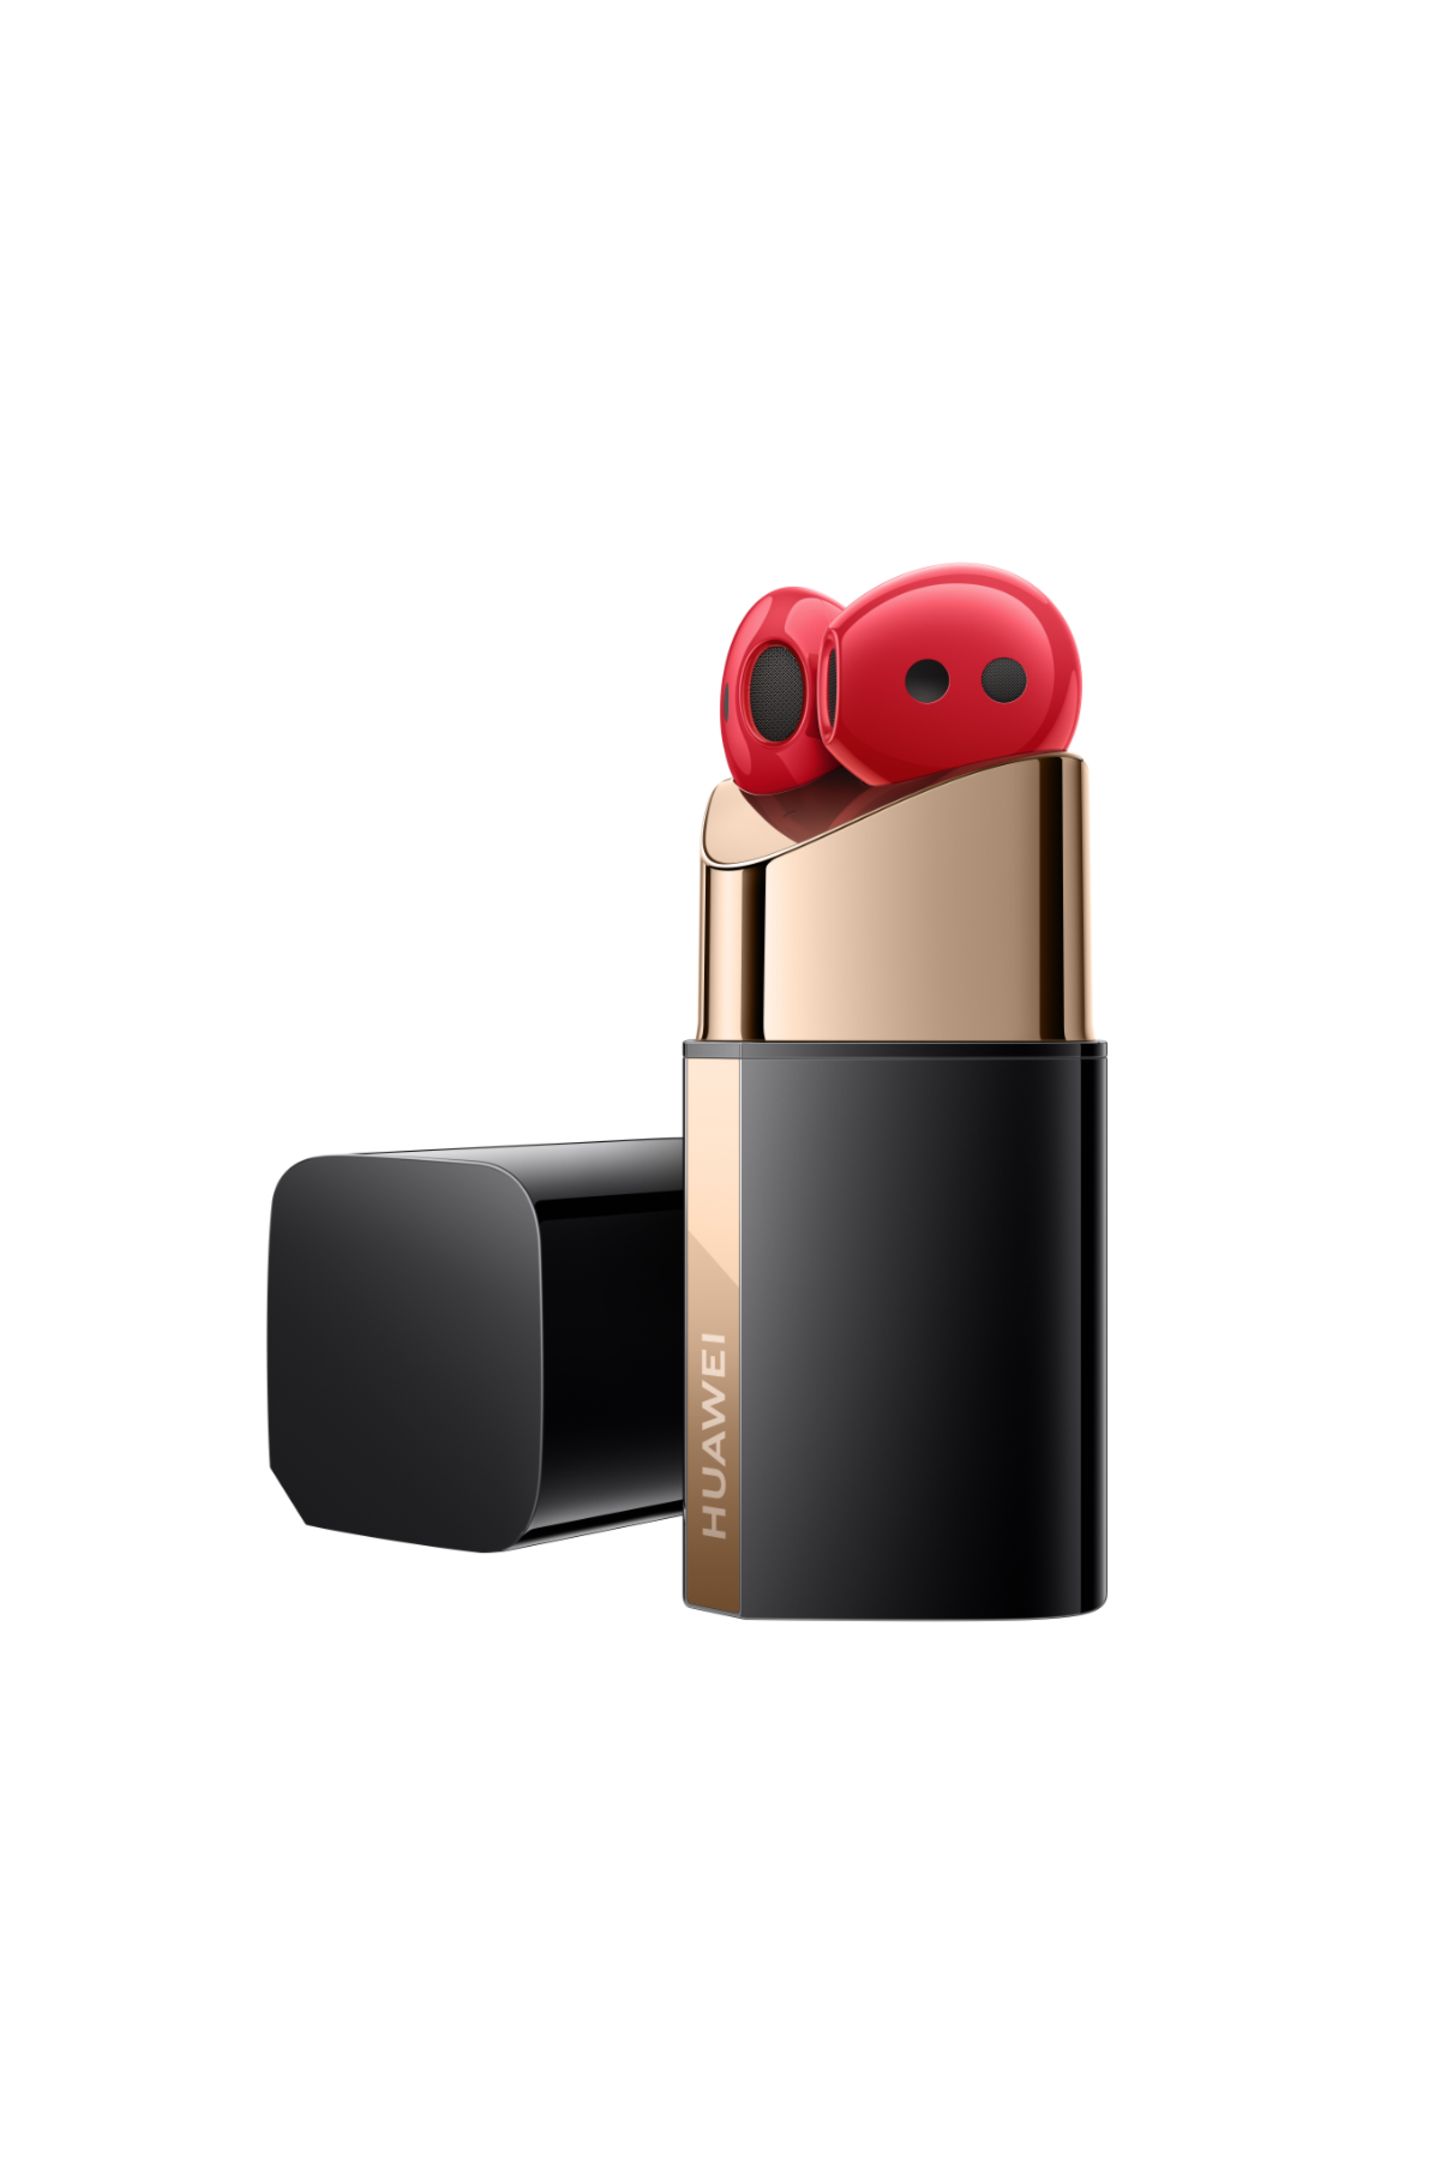 Knutsch Ja, auch Technik-Gadgets können so aussehen, dass wir uns bei jeder Benutzung auch über die coole Optik freuen, so wie diese In-Ear-Kopfhörer mit Noise-Cancelling-Funktion im Lippenstift-Look. "FreeBuds Lipstick" von Huawei, ca. 200 Euro.